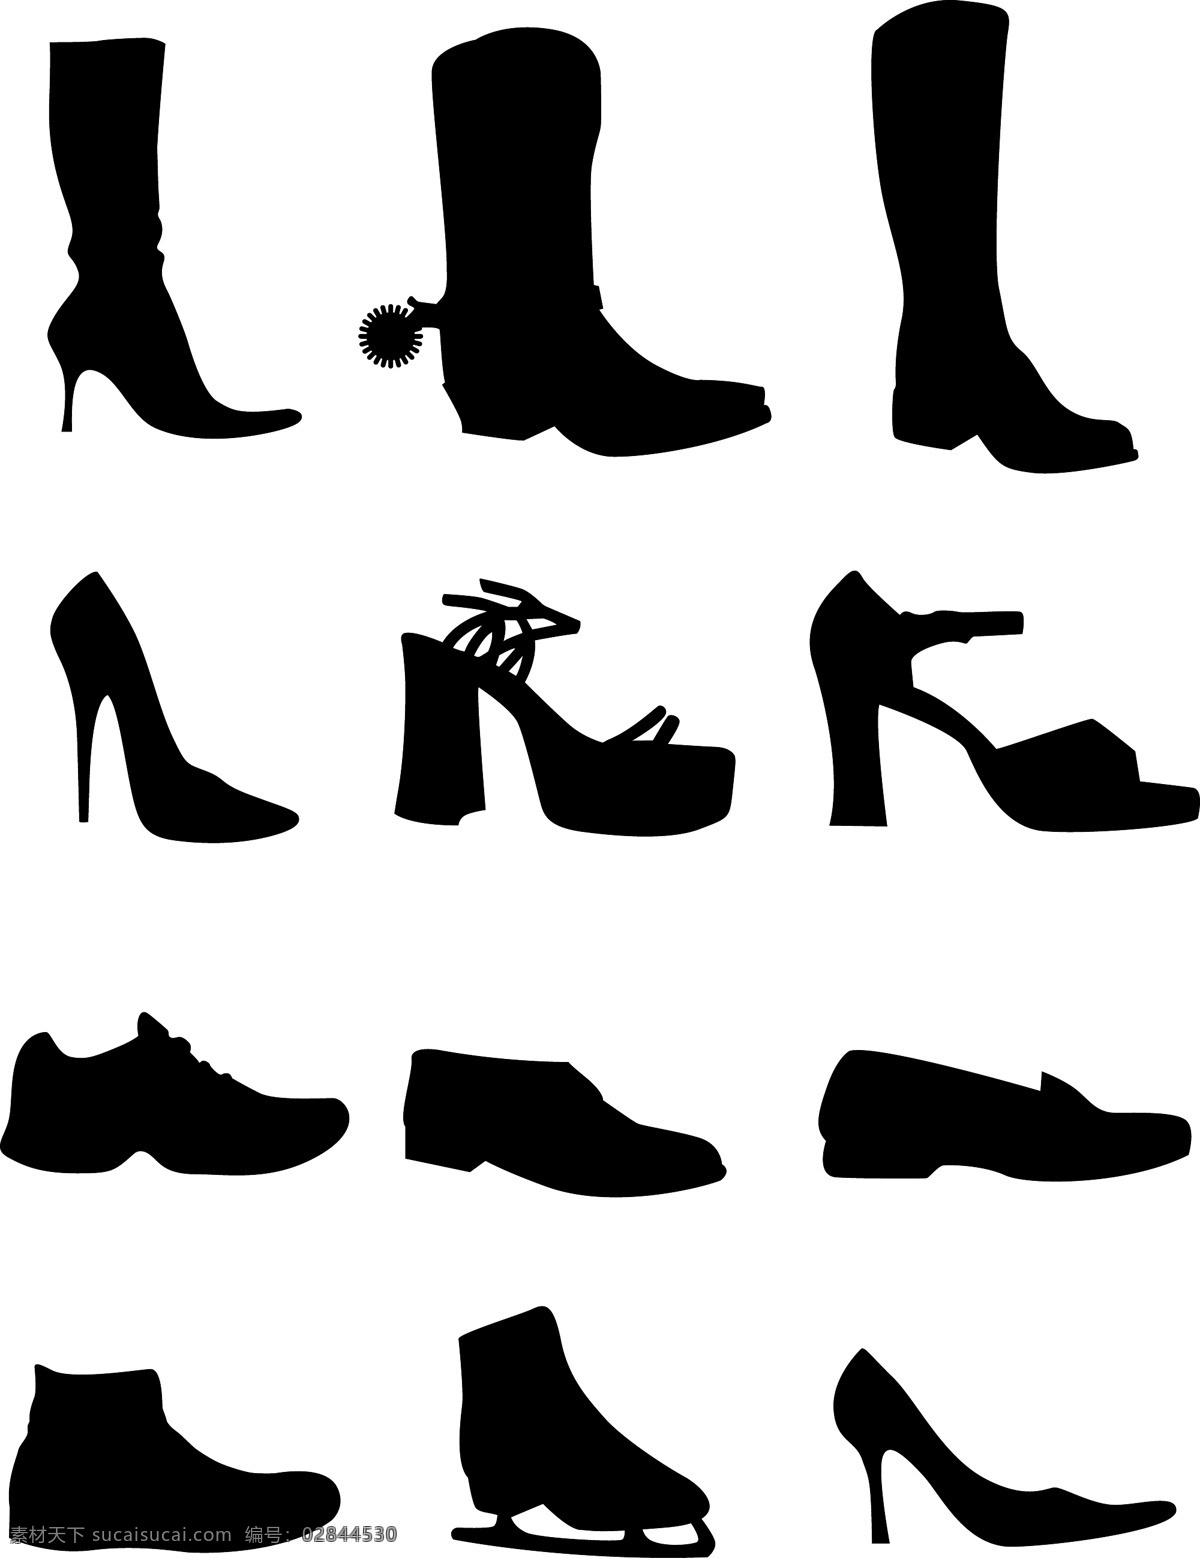 鞋子剪影 剪影 鞋子 靴子 皮鞋 男鞋 女鞋 高跟鞋 溜冰鞋 小图标 标识标志图标 矢量